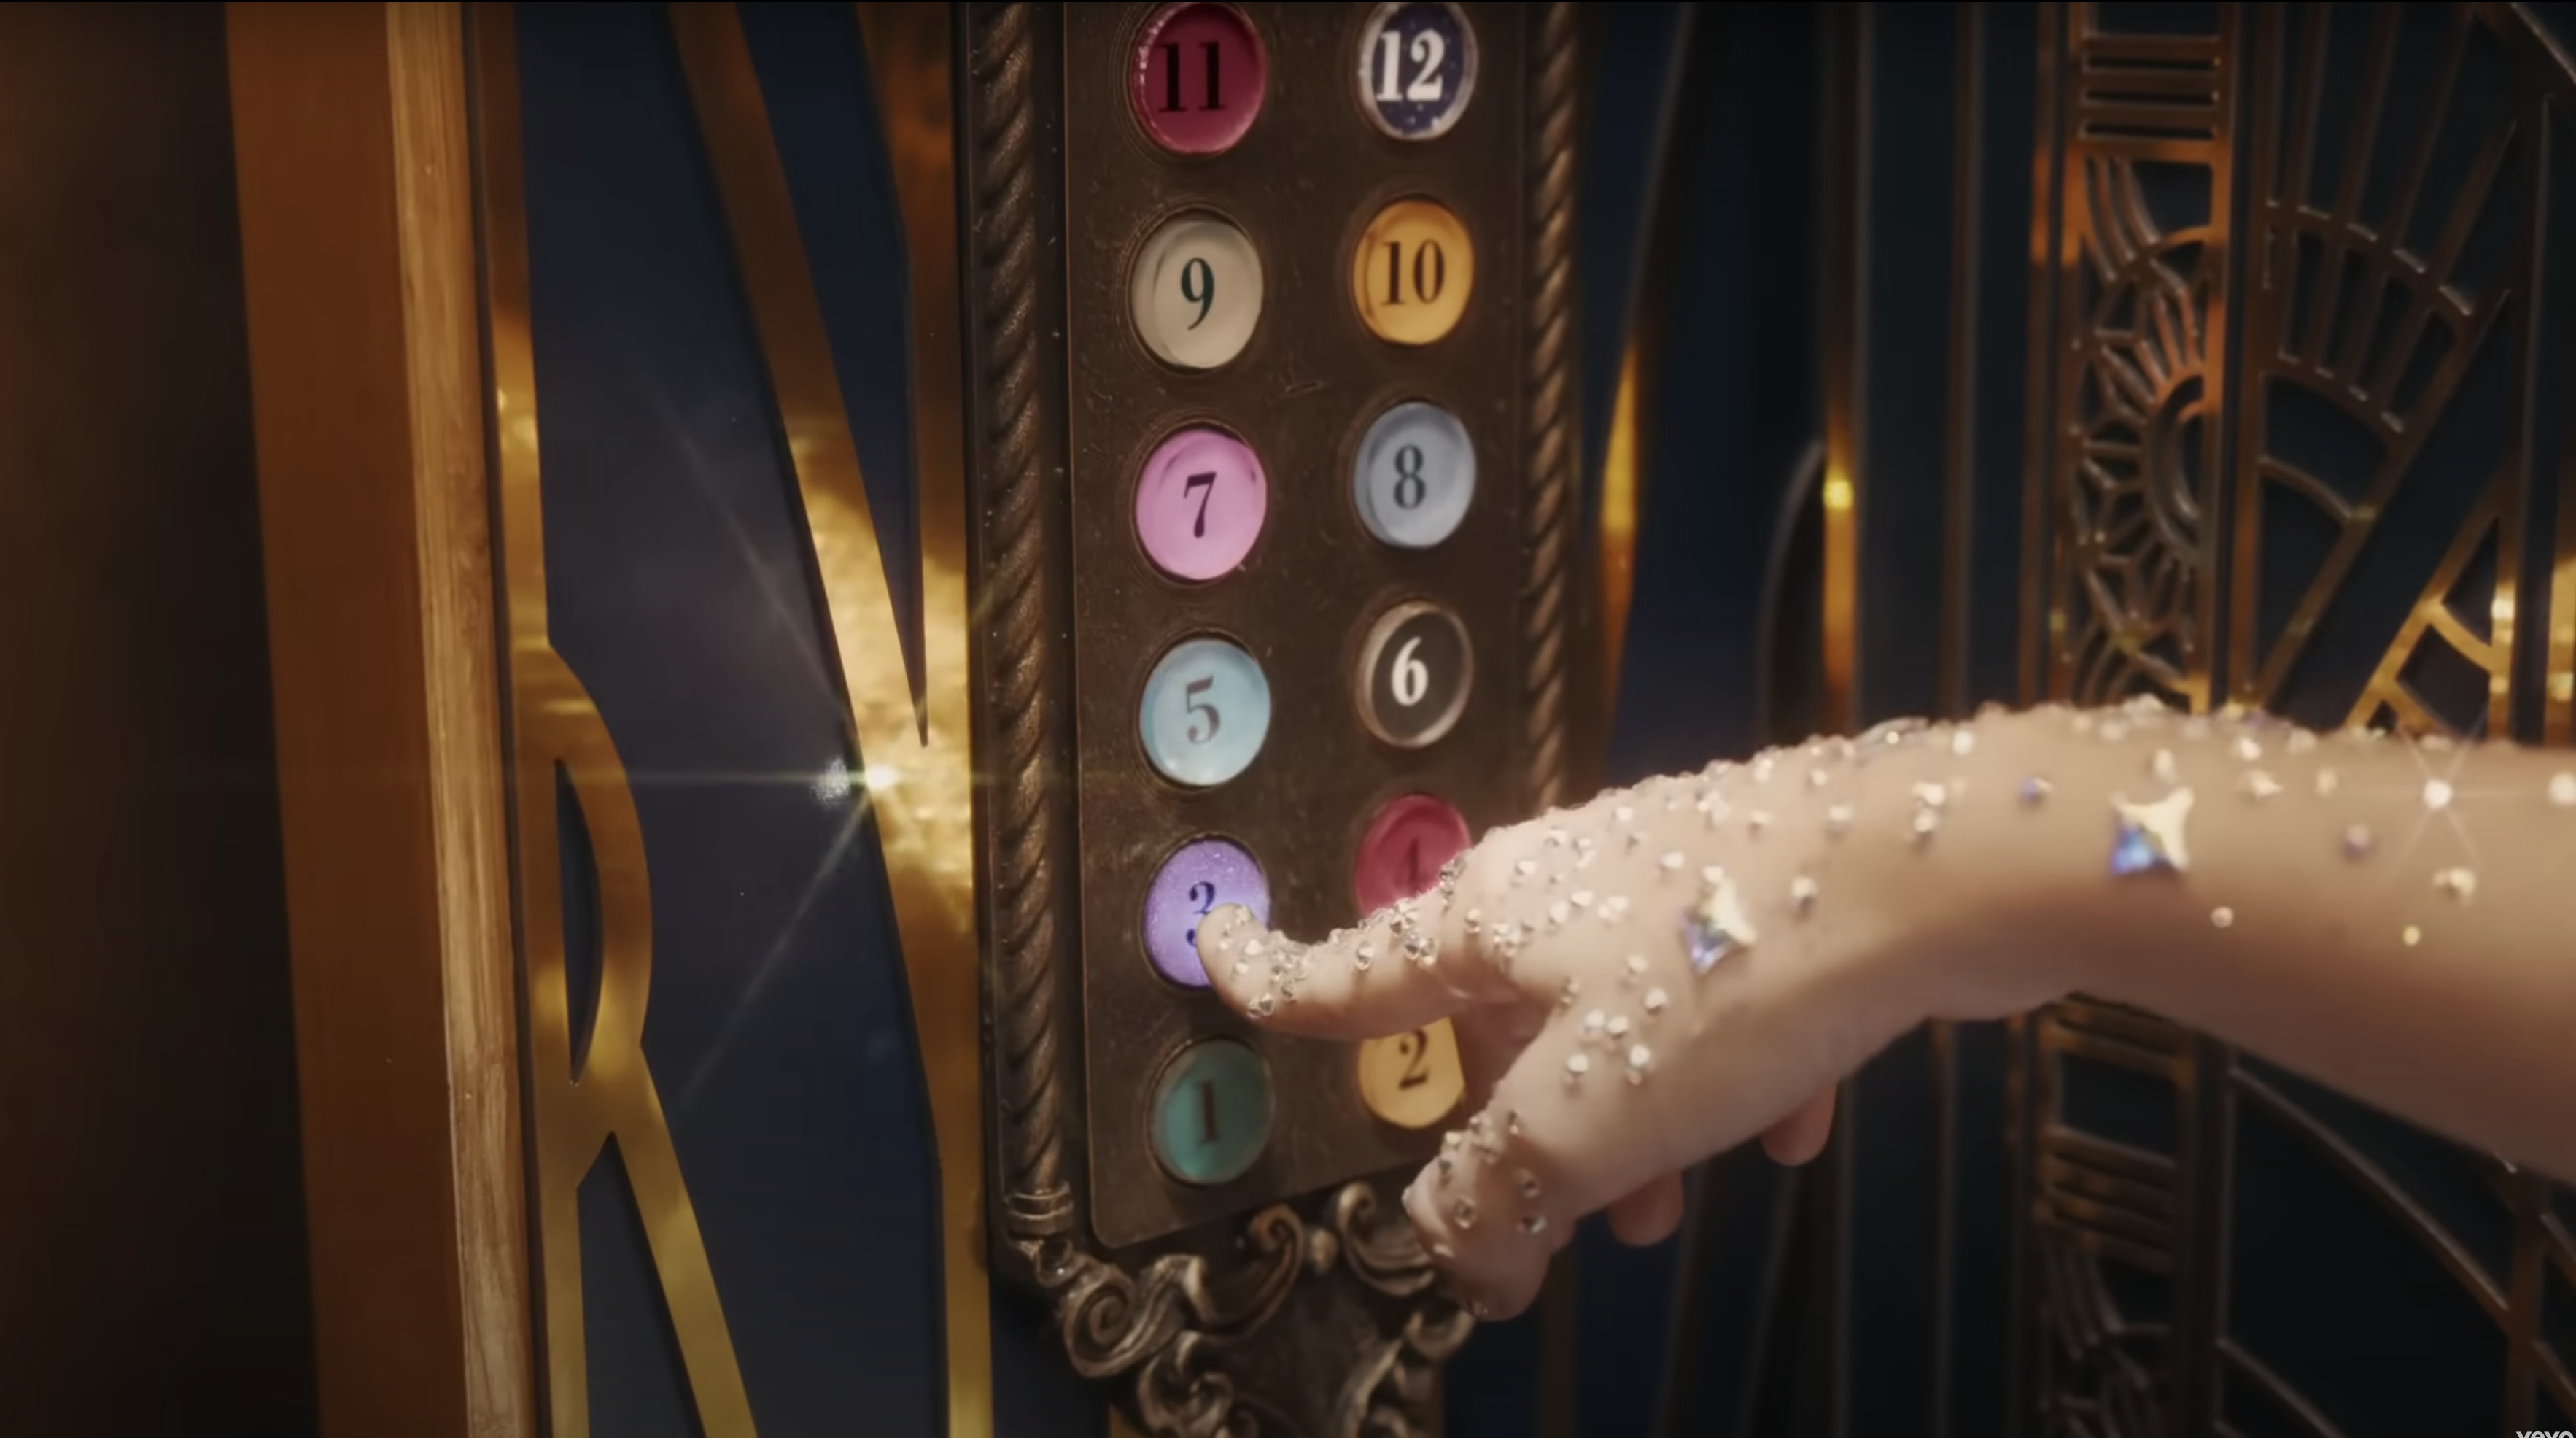 Eine Hand in einem transparenten Gltzerhandschuh drückt auf einen Knopf am Fahrstuhl